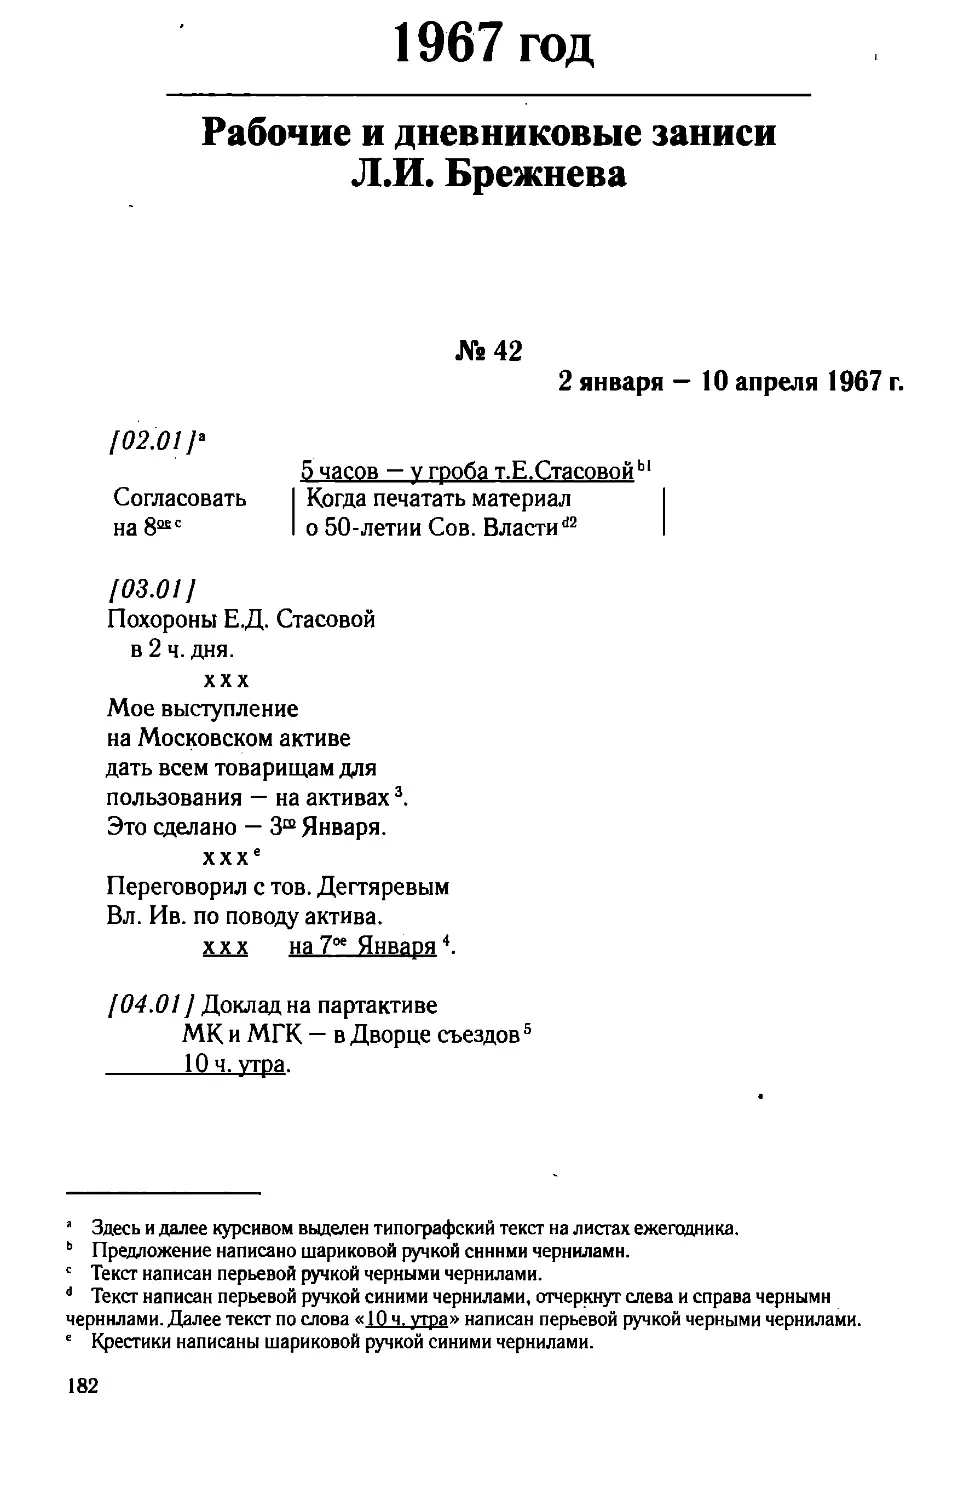 Рабочие и дневниковые записи Л.И. Брежнева. 1967 год